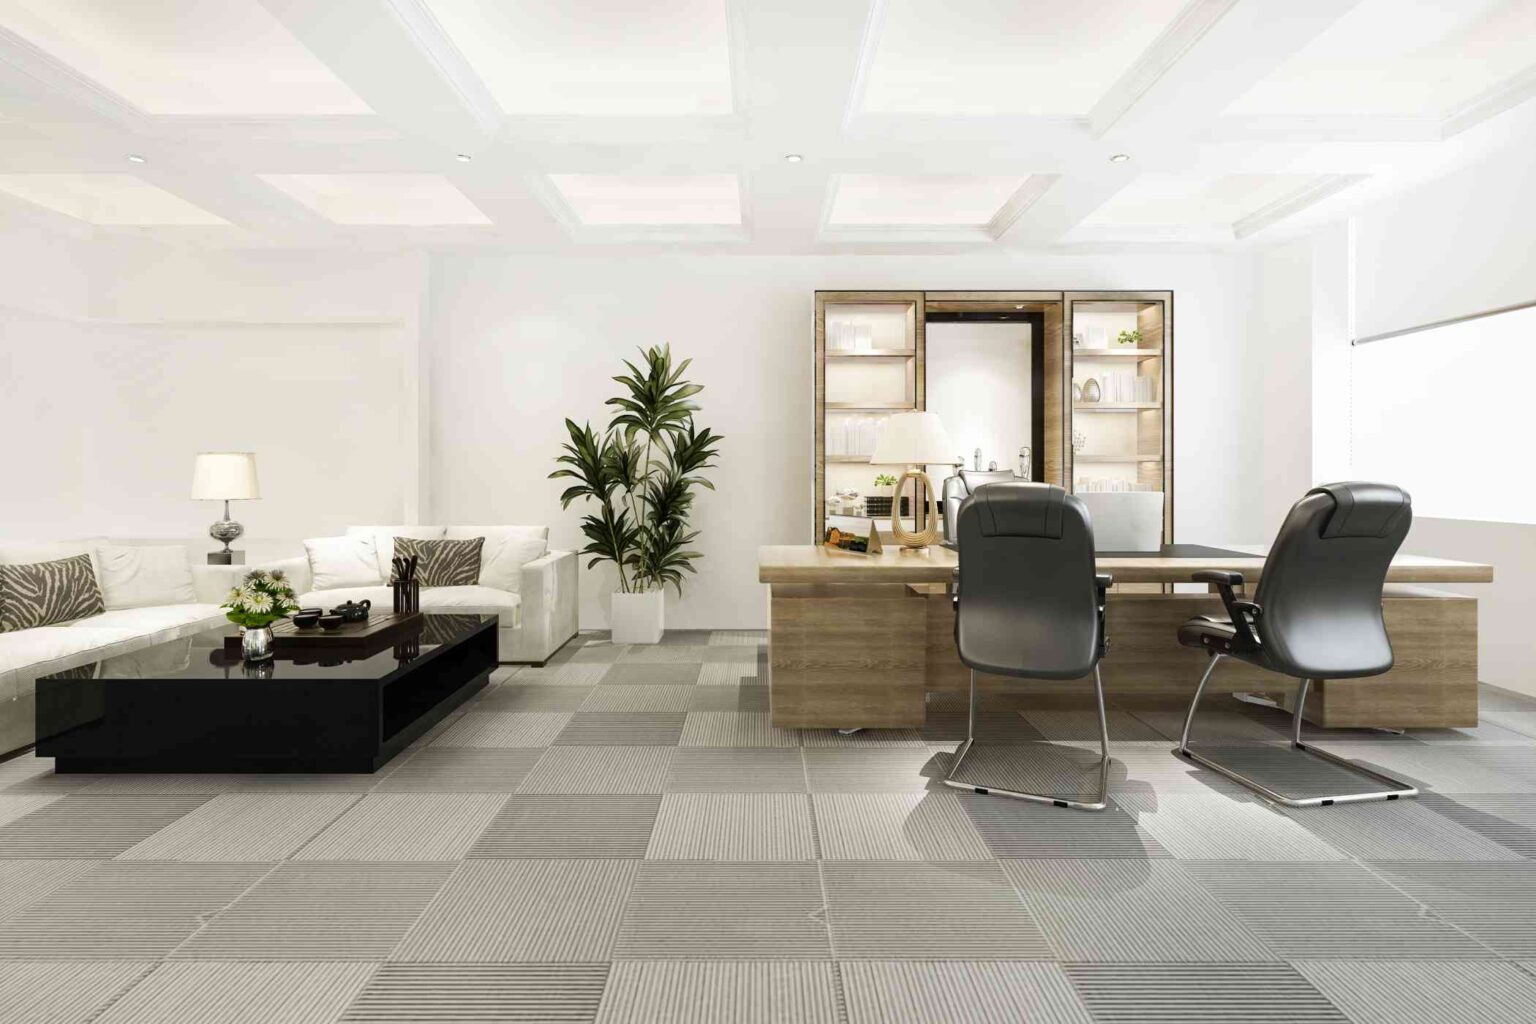 Office interior design work in Dubai - Fast service